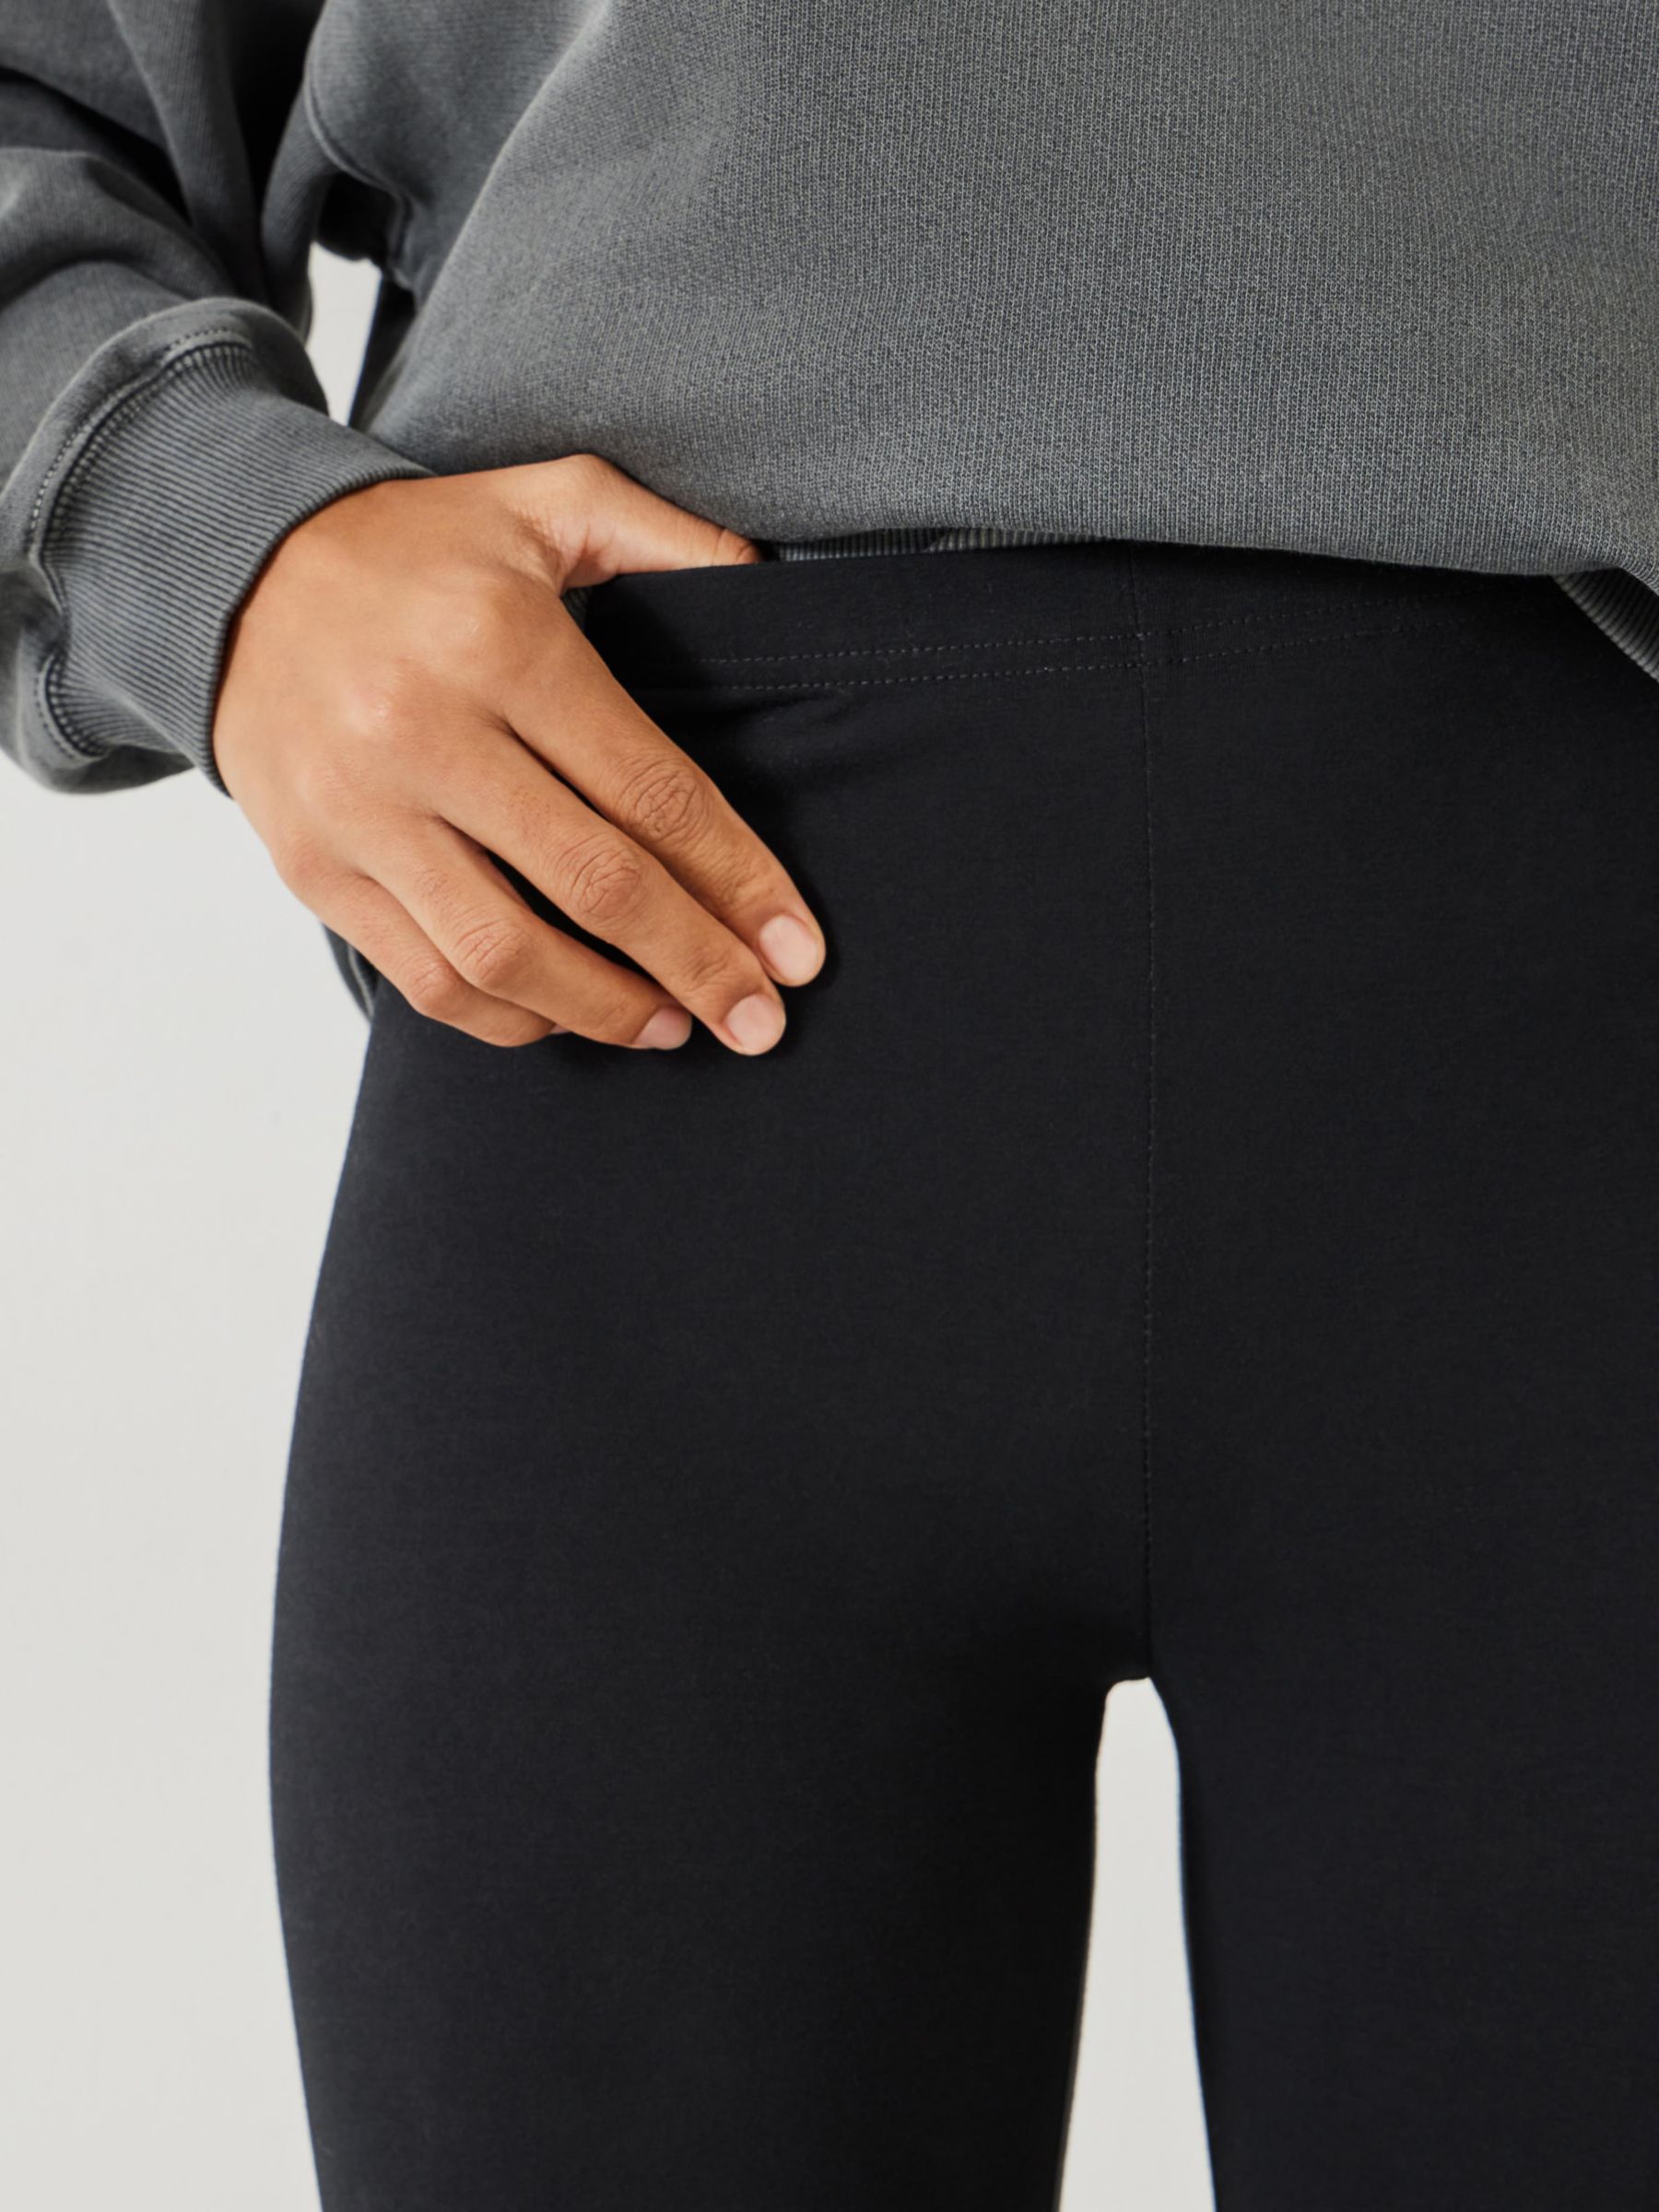 Buy Matte Black Full Length Leggings/Tights – Plus Size Online